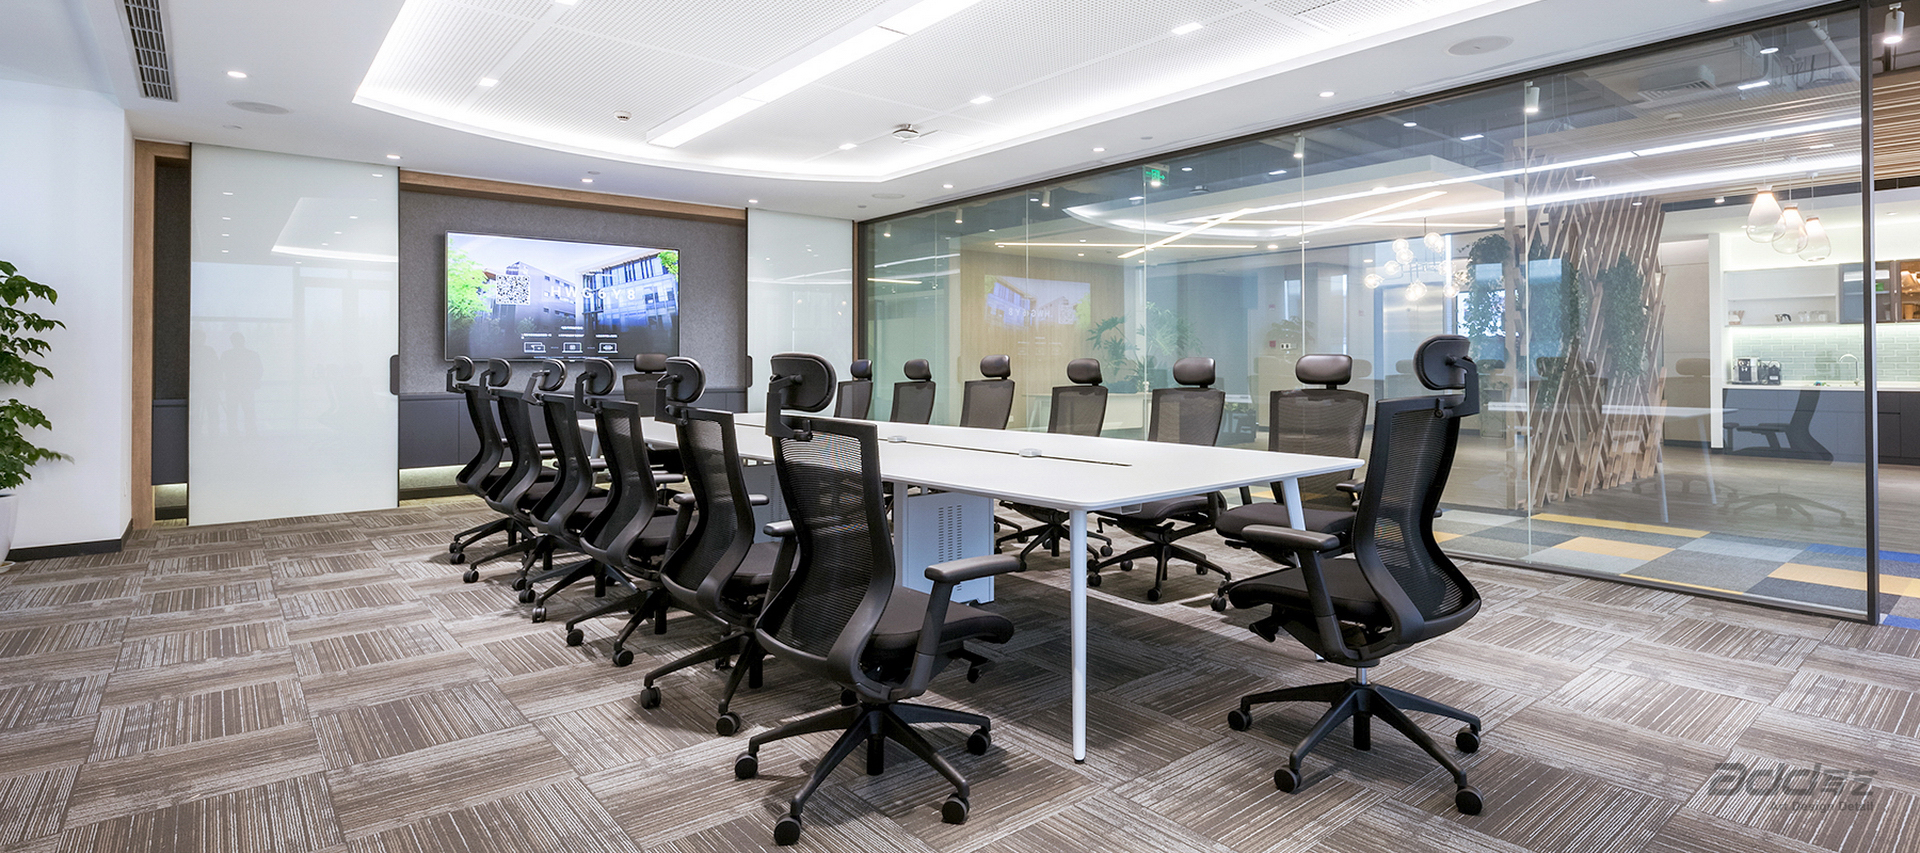 匯納科技辦公空間設計-會議室-pc